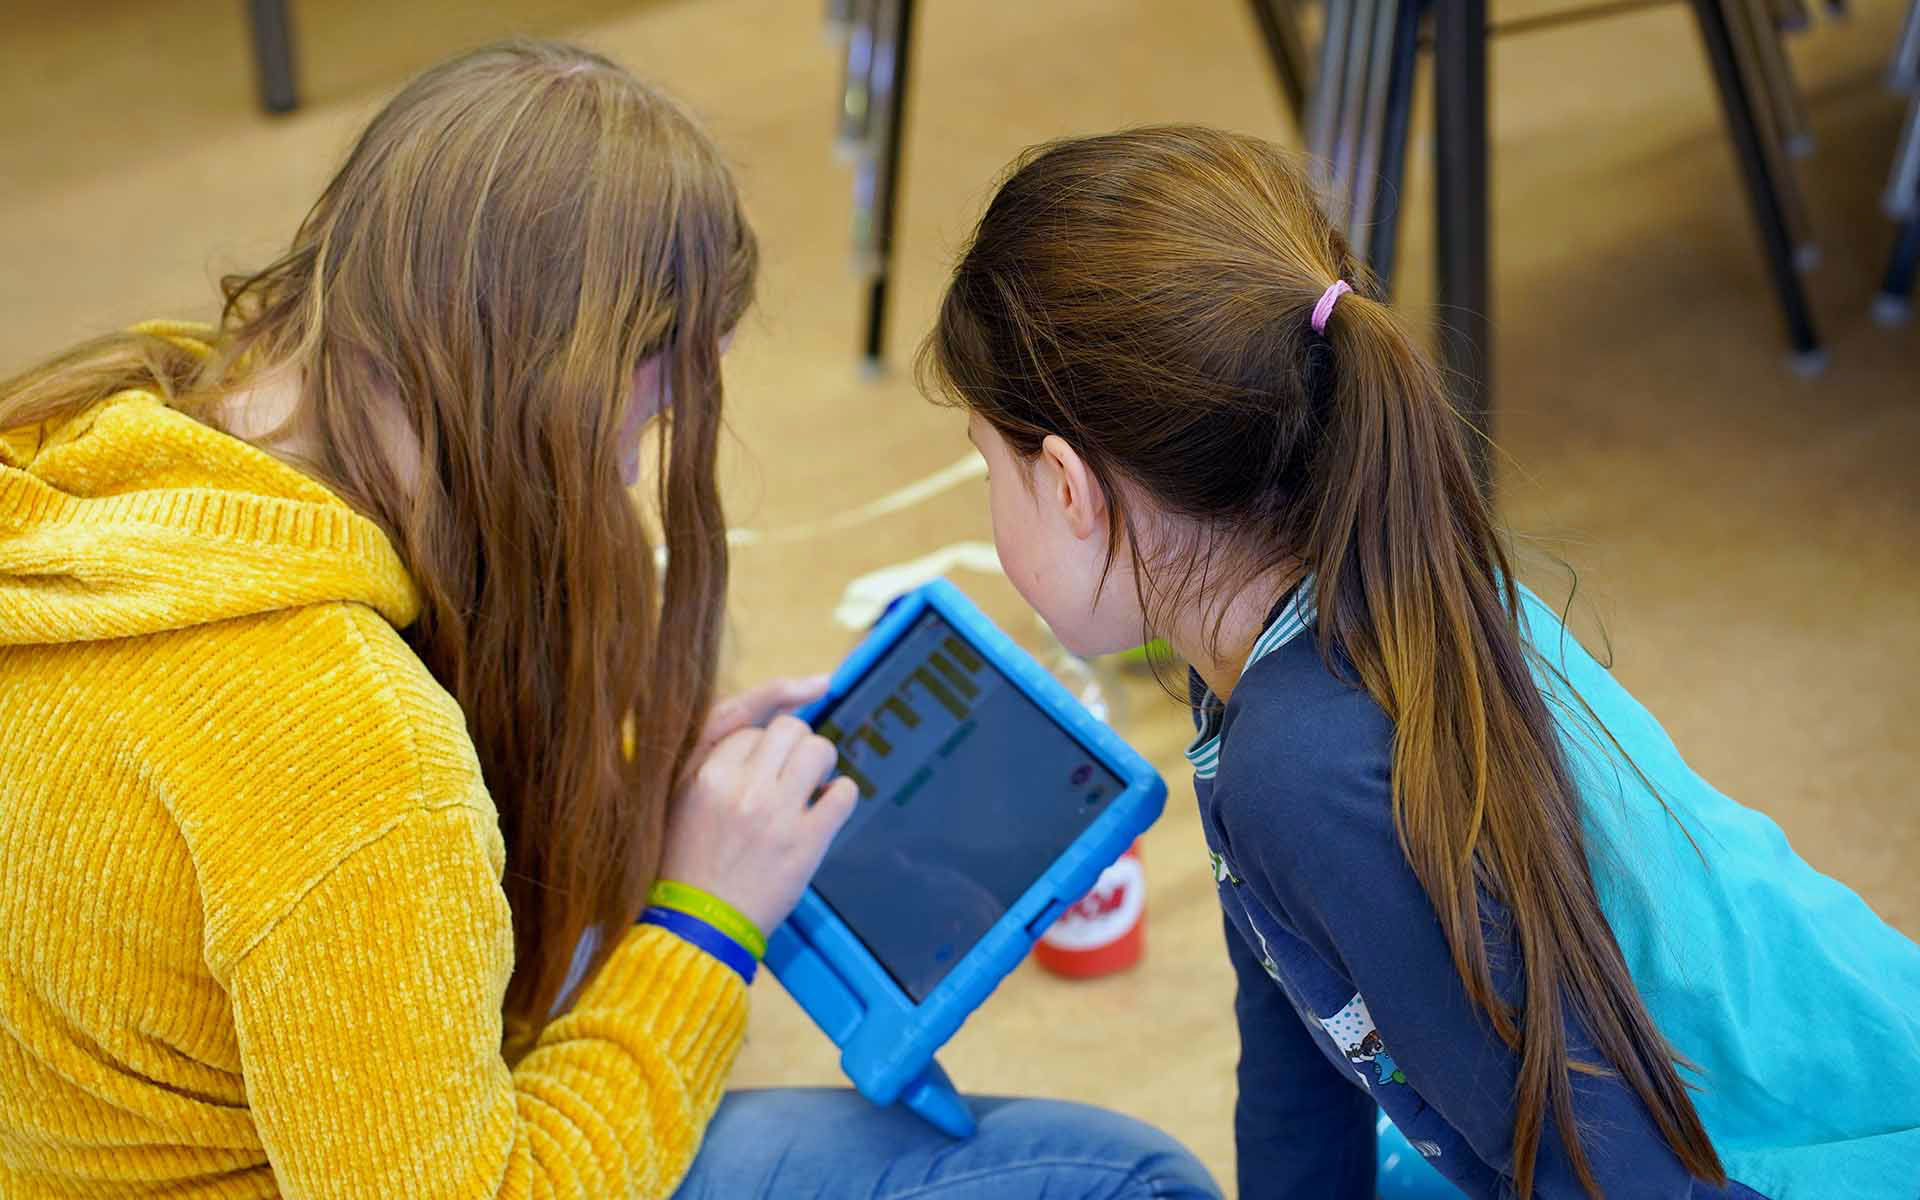 Zwei junge Mädchen spielen mit einem Tablet.